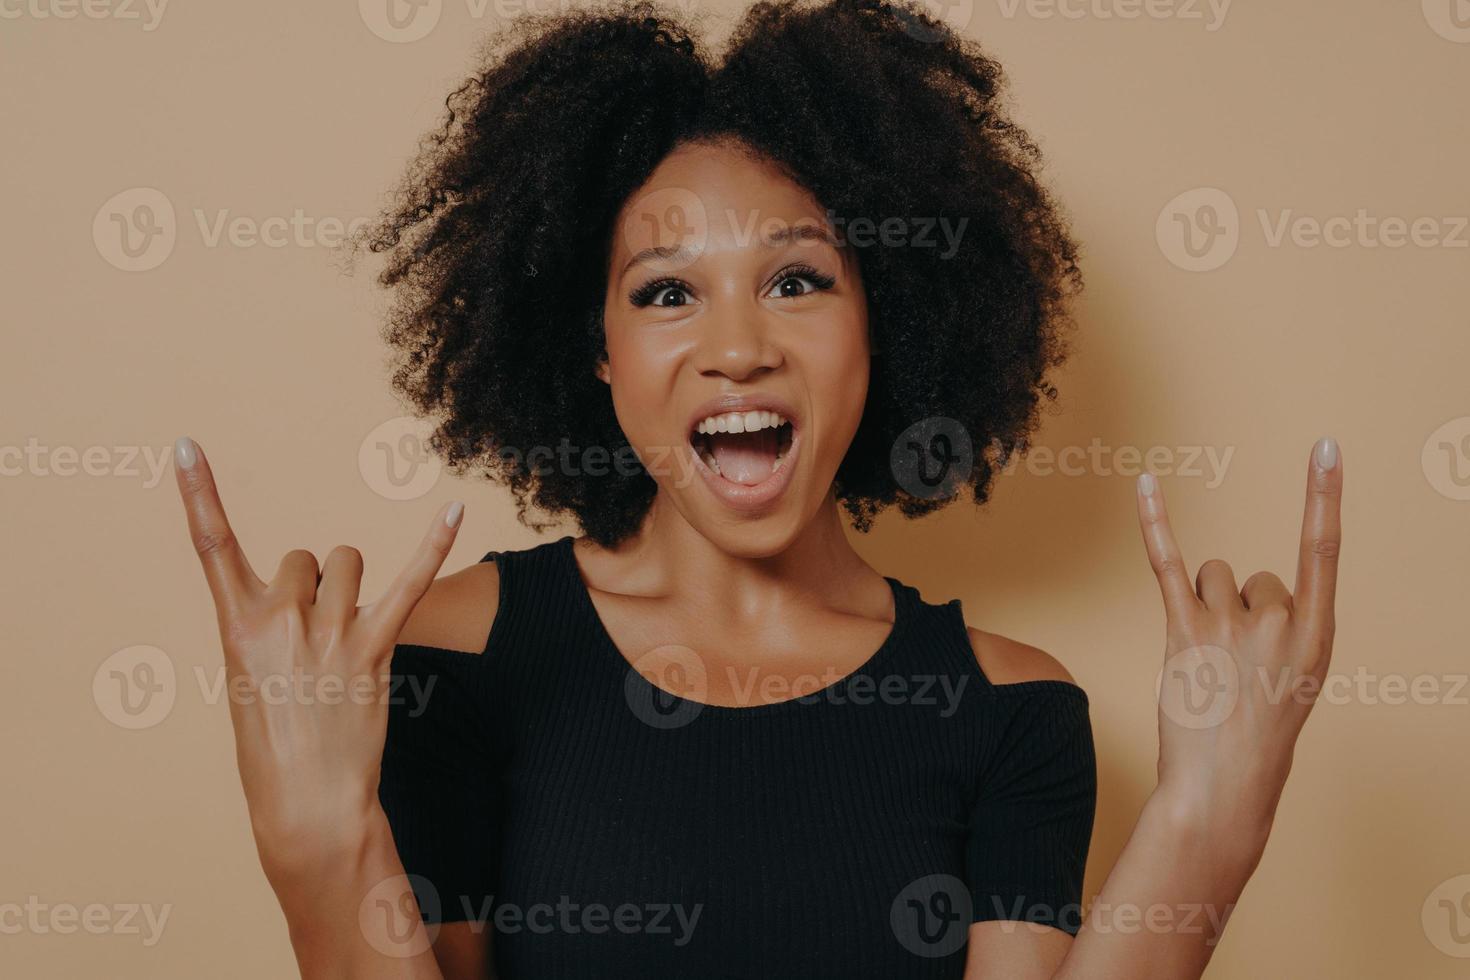 mujer joven con camiseta negra gritando con expresión facial loca haciendo símbolo de rock-n-roll foto